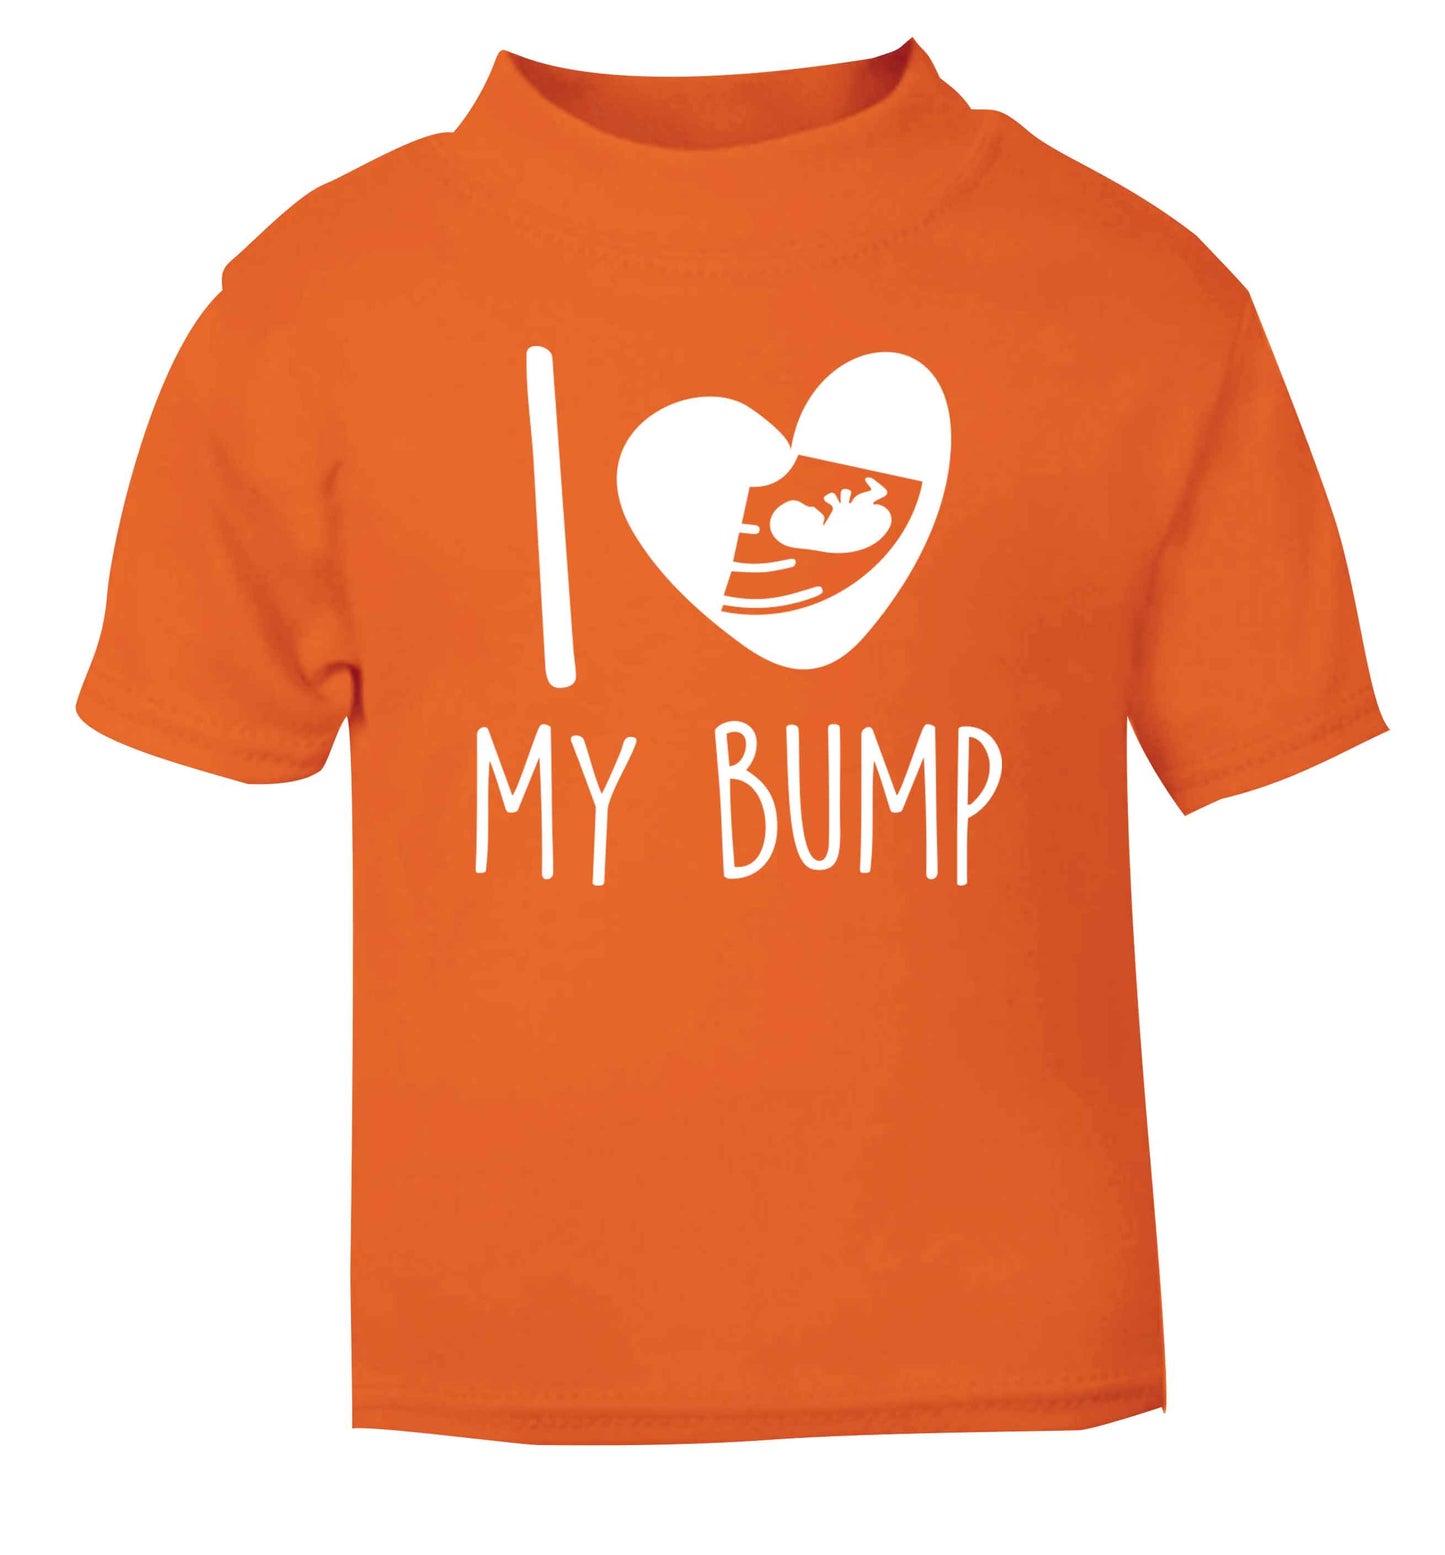 I love my bump orange Baby Toddler Tshirt 2 Years